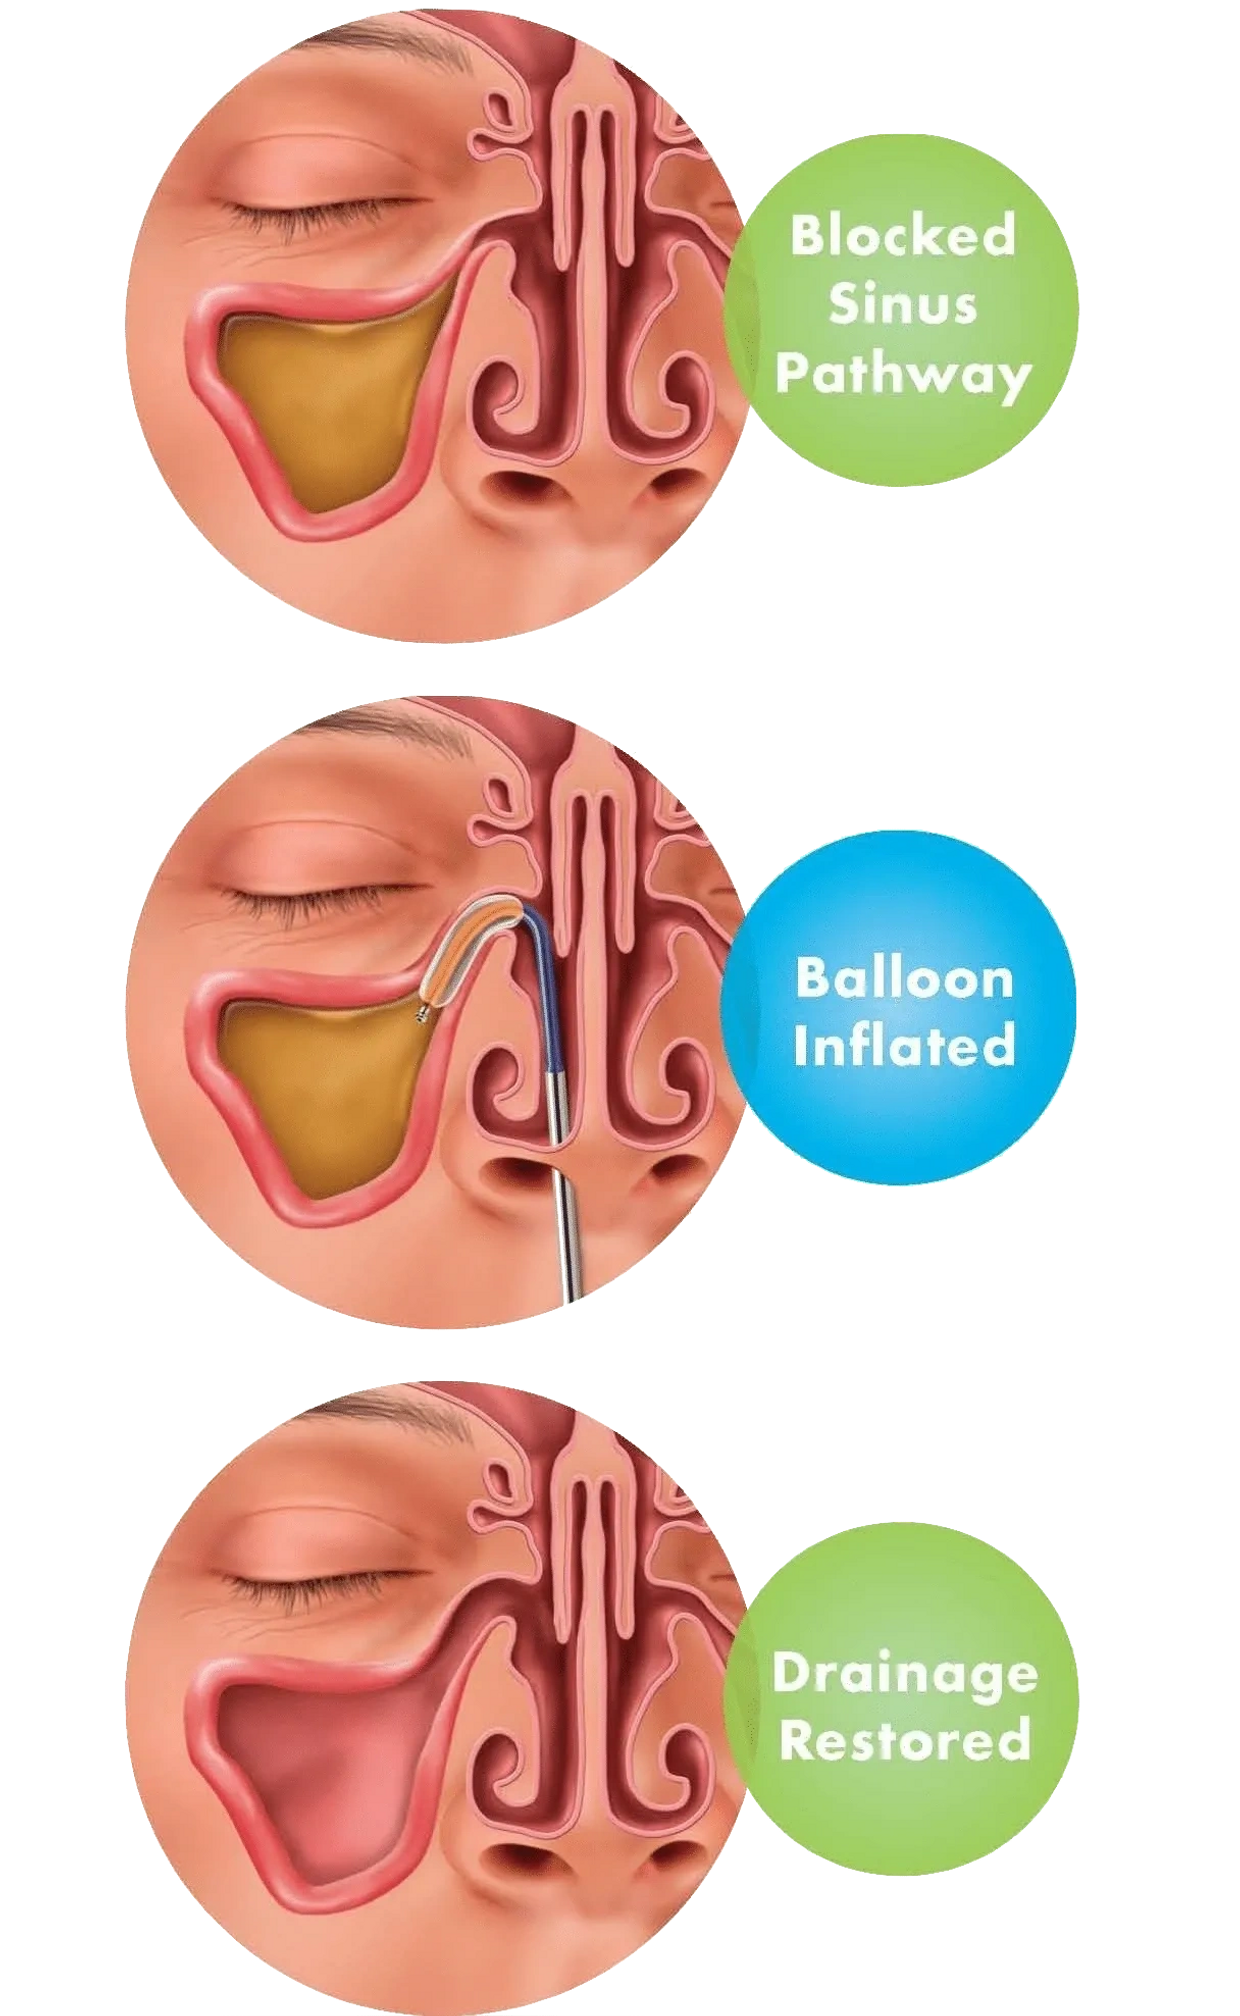 Balloon dilating the maxillary sinus